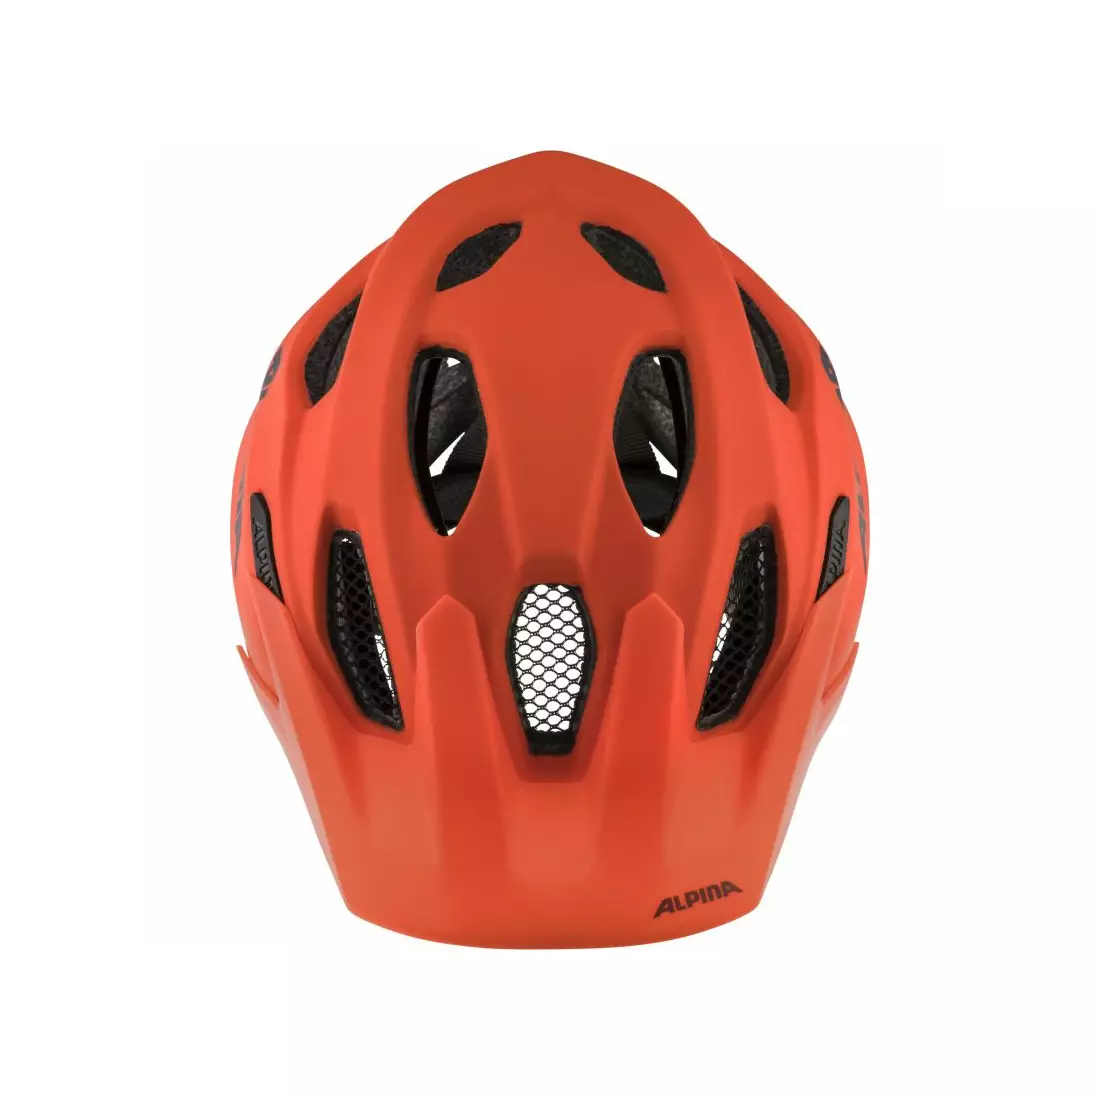 ALPINA juniorská cyklistická přilba CARAPAX JR pumpkin-orange mat